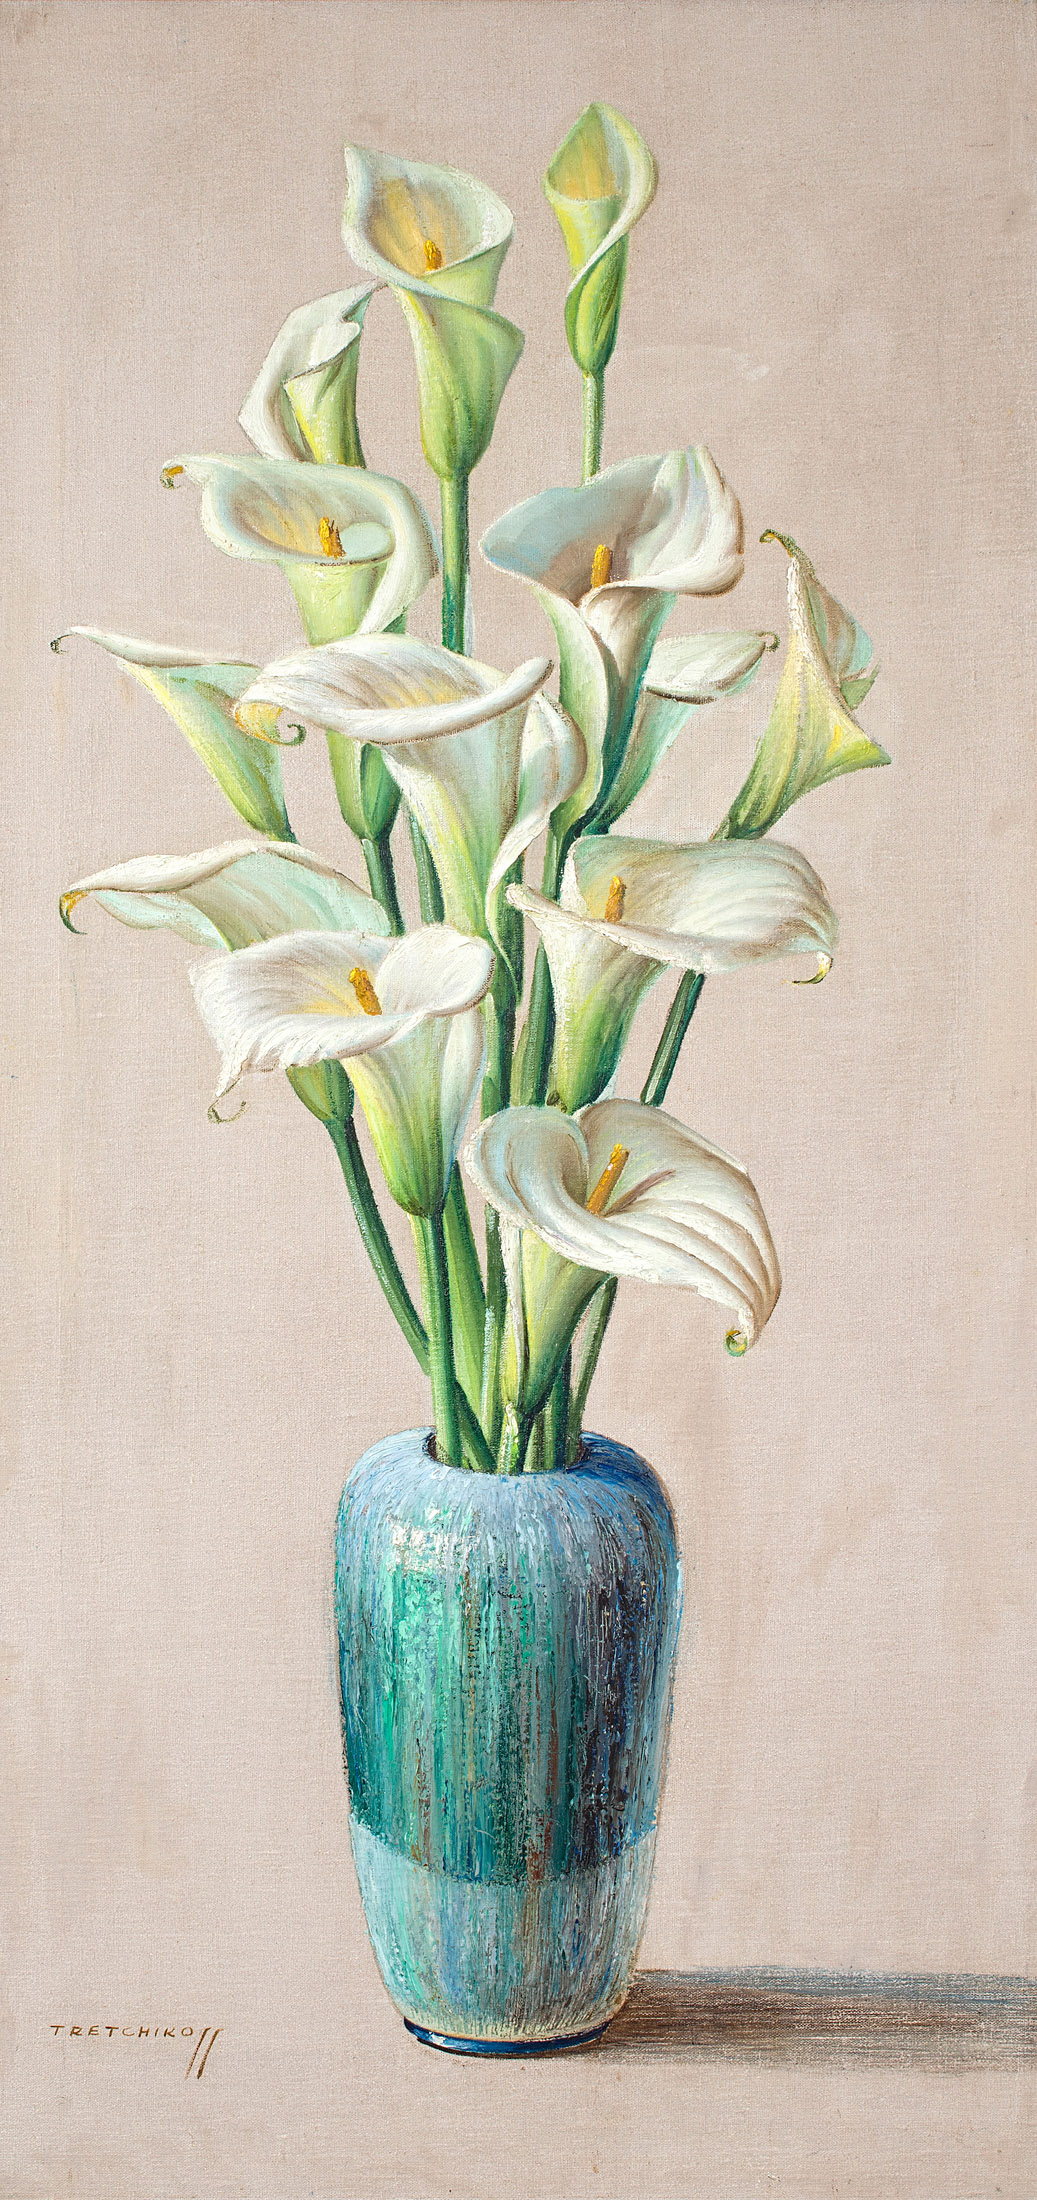 Vladimir Tretchikoff; Arum Lilies in a Blue Vase